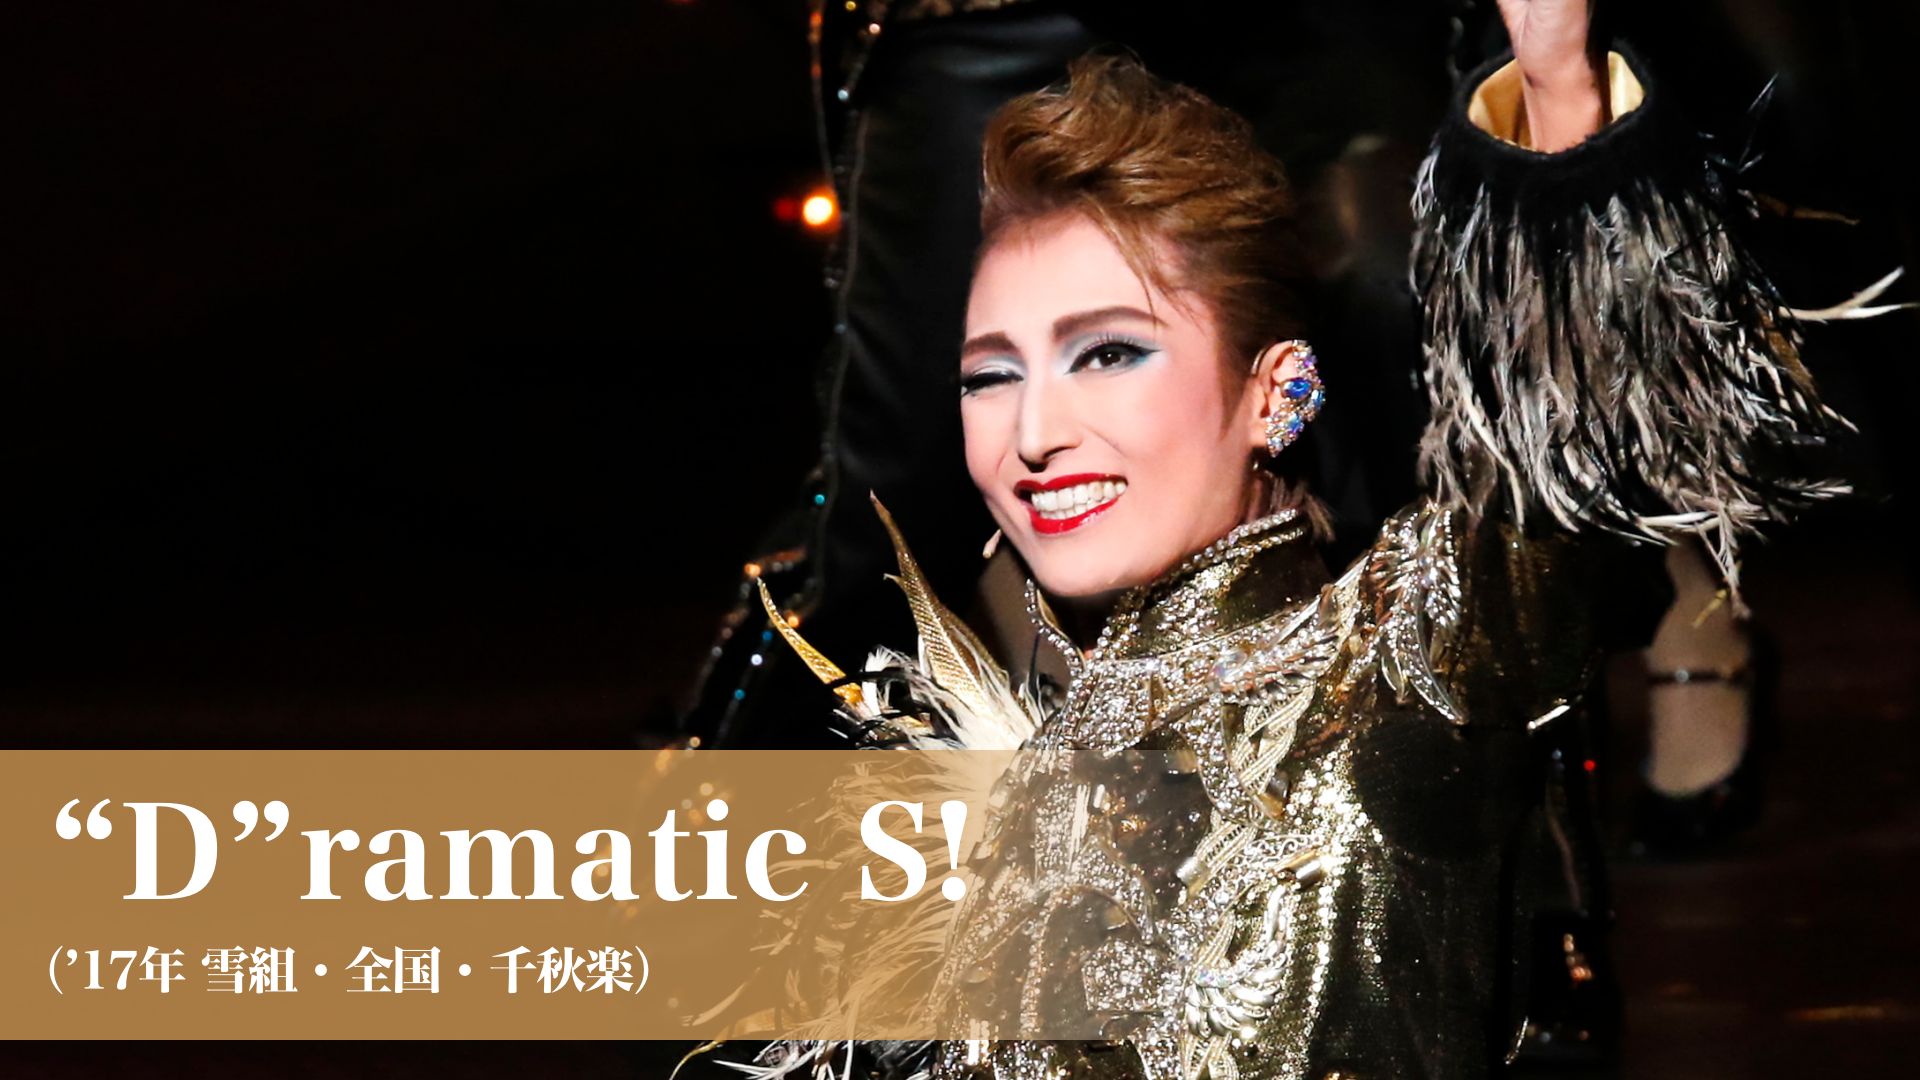 宝塚歌劇 “D”ramatic S!(’17年雪組・全国・千秋楽)